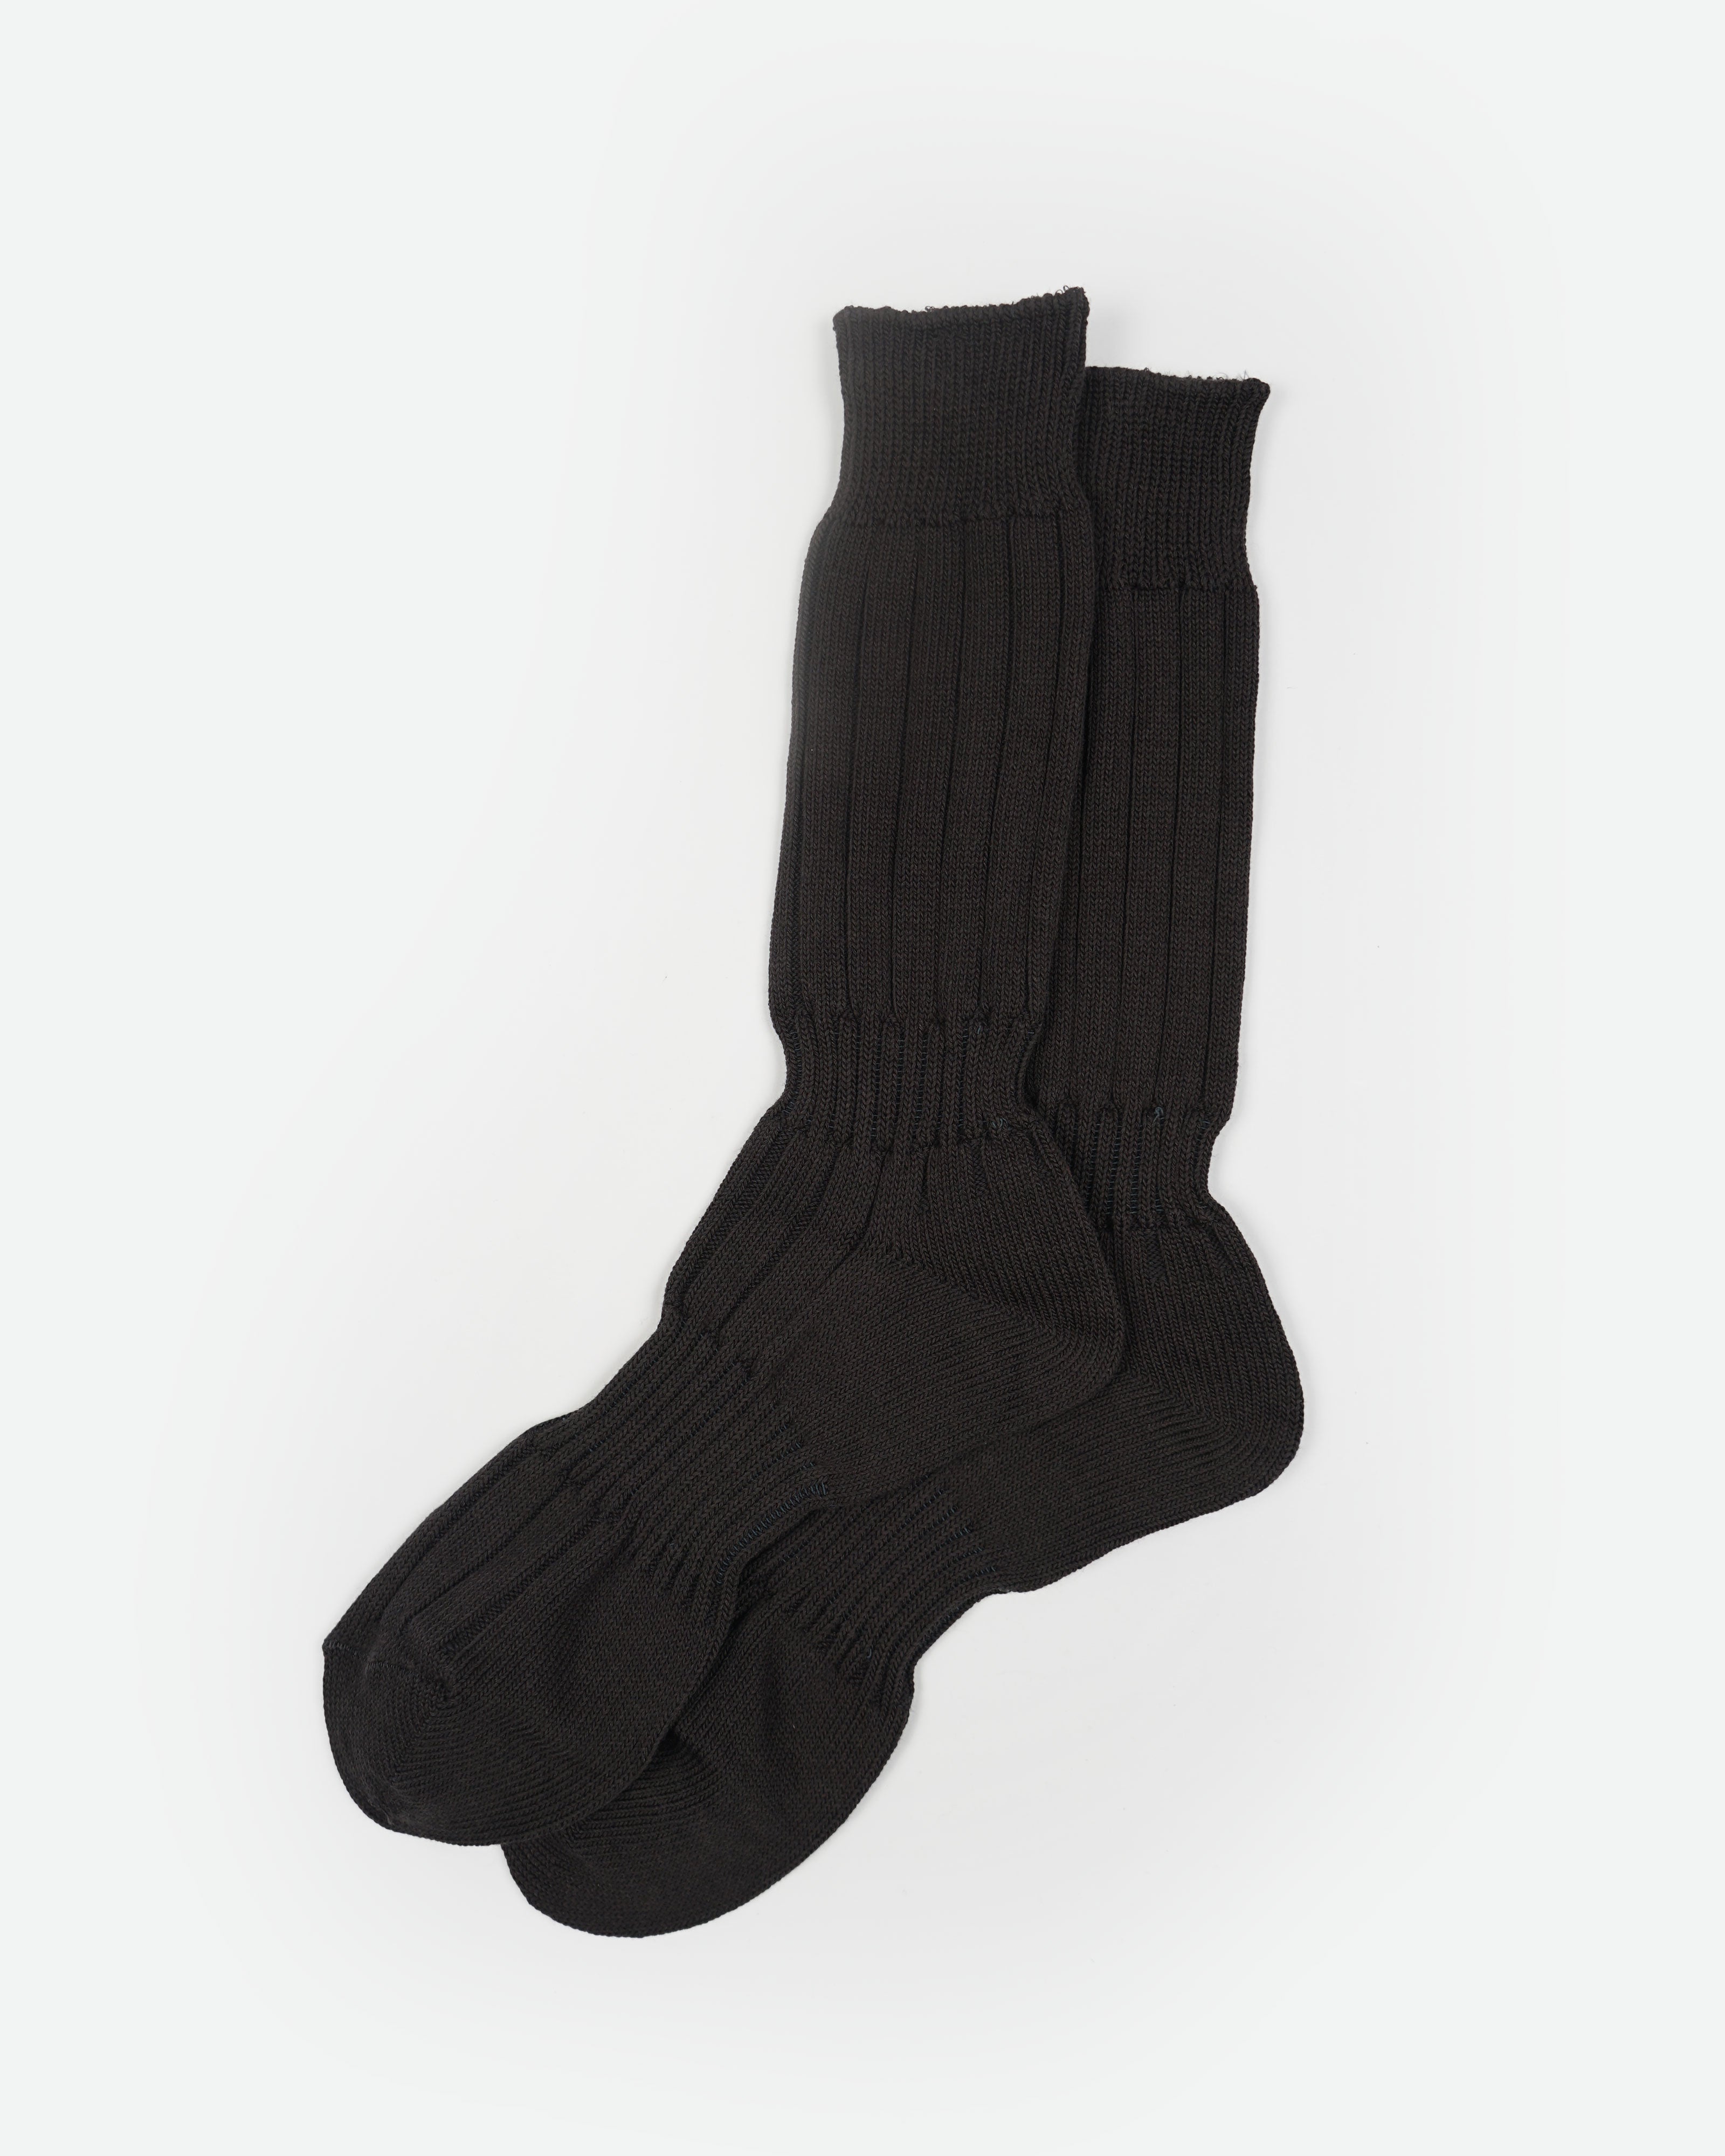 Outlast Hiker Socks / Black